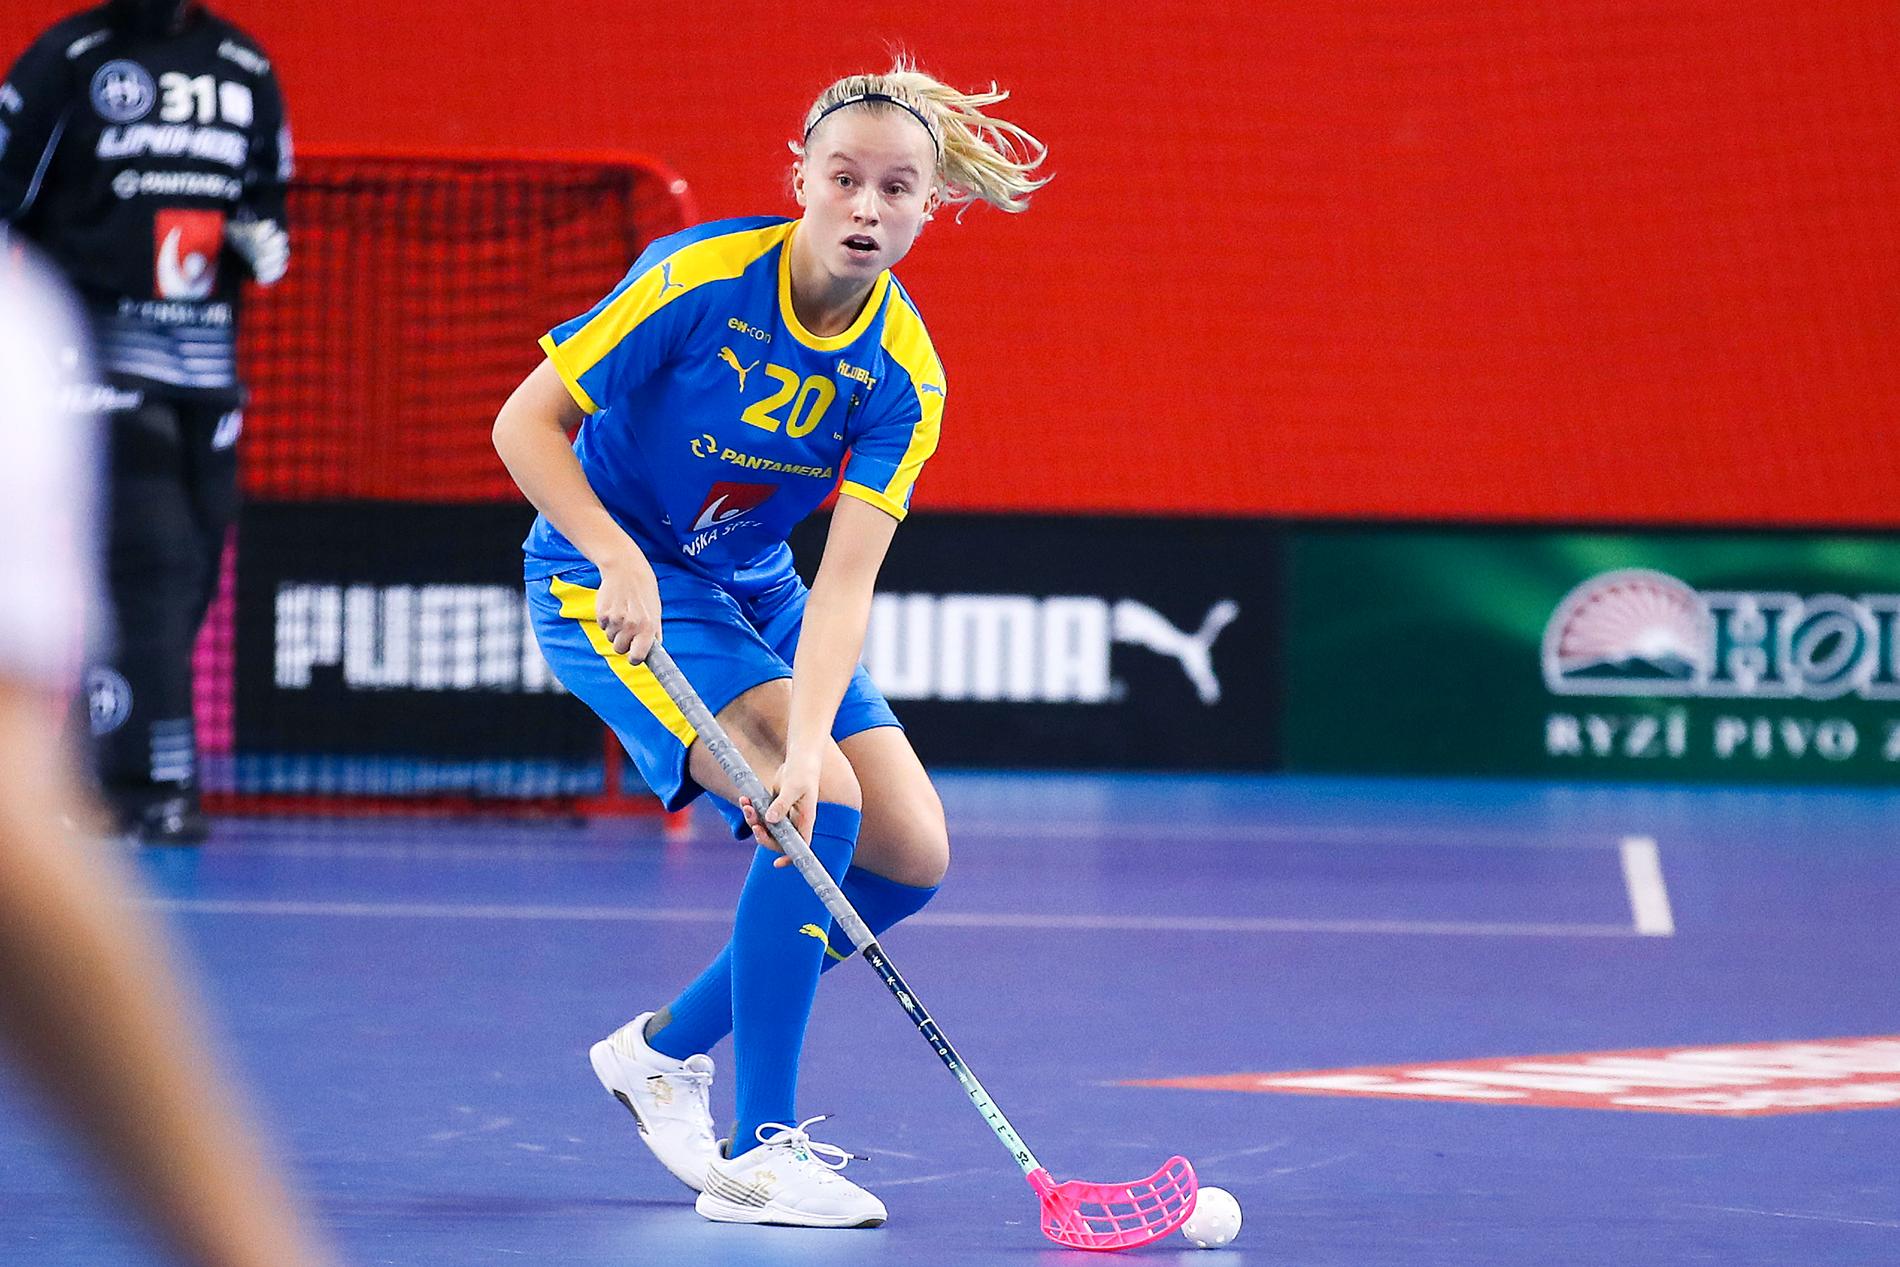 I helgen väntar Finnkampen för Lisa Carlsson och resten av Sveriges landslag.